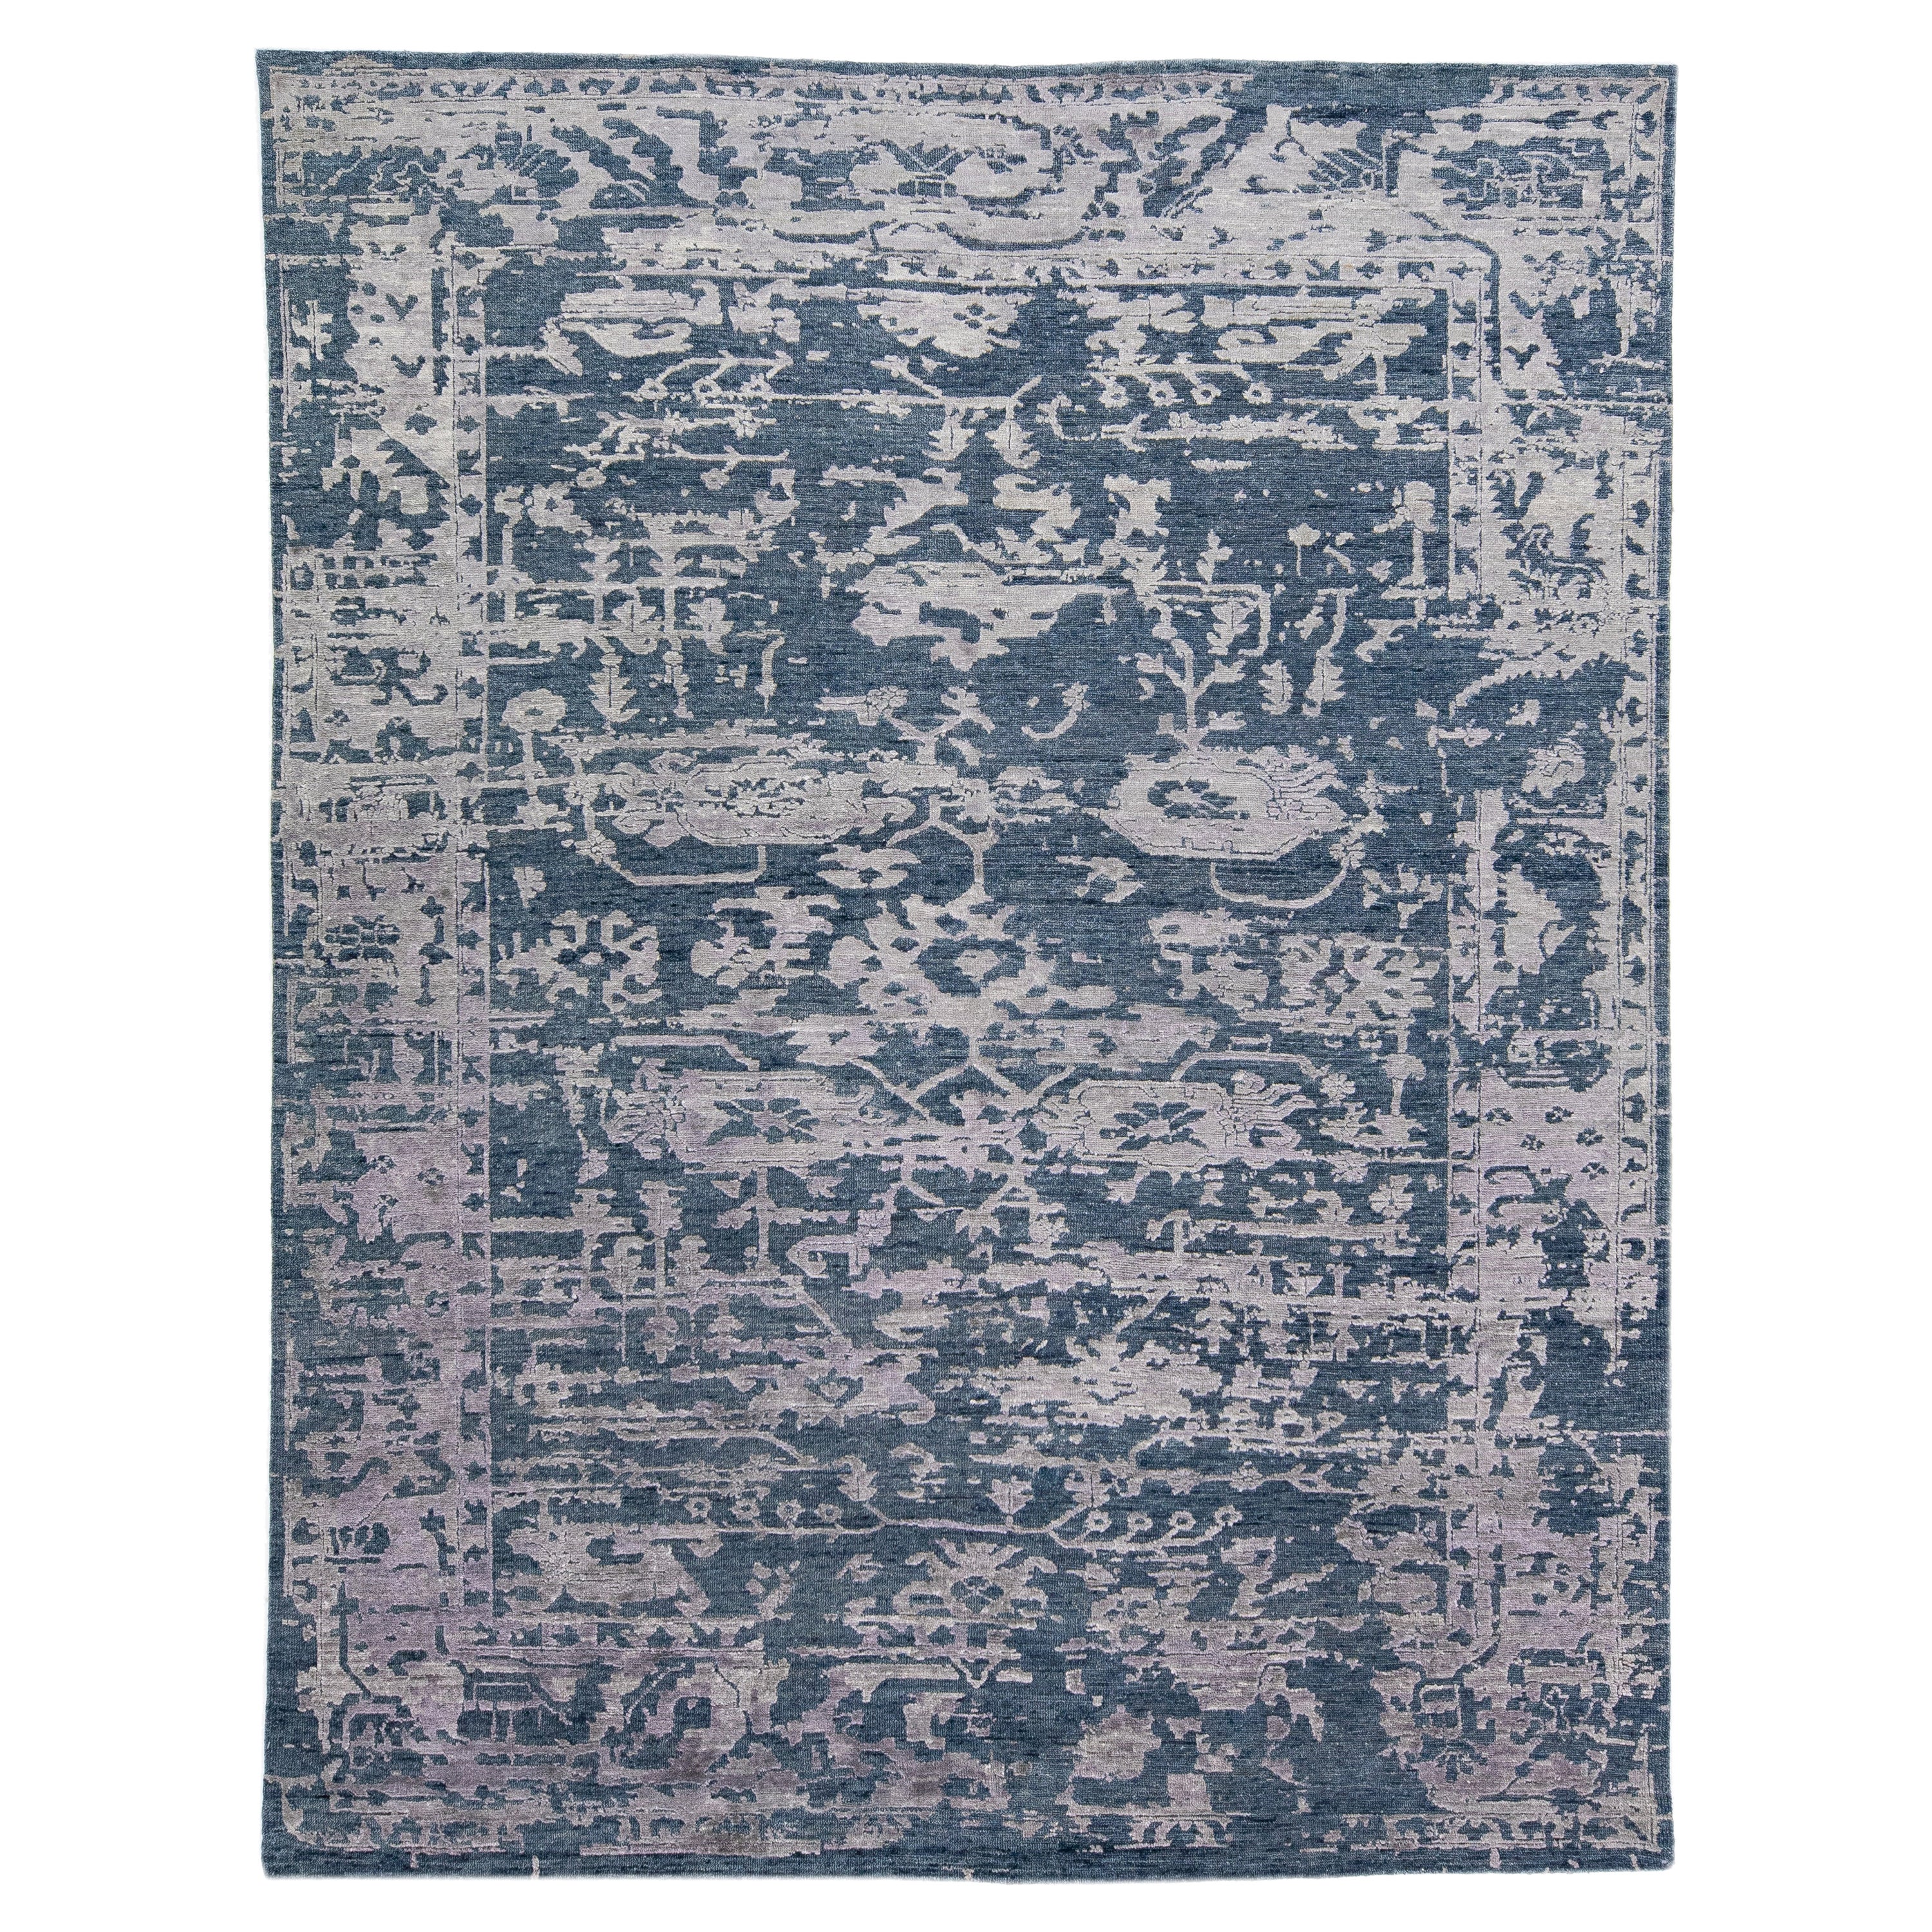 Handgefertigter zeitgenössischer abstrakter Teppich aus Wolle und Seide mit blauem und grauem Feld